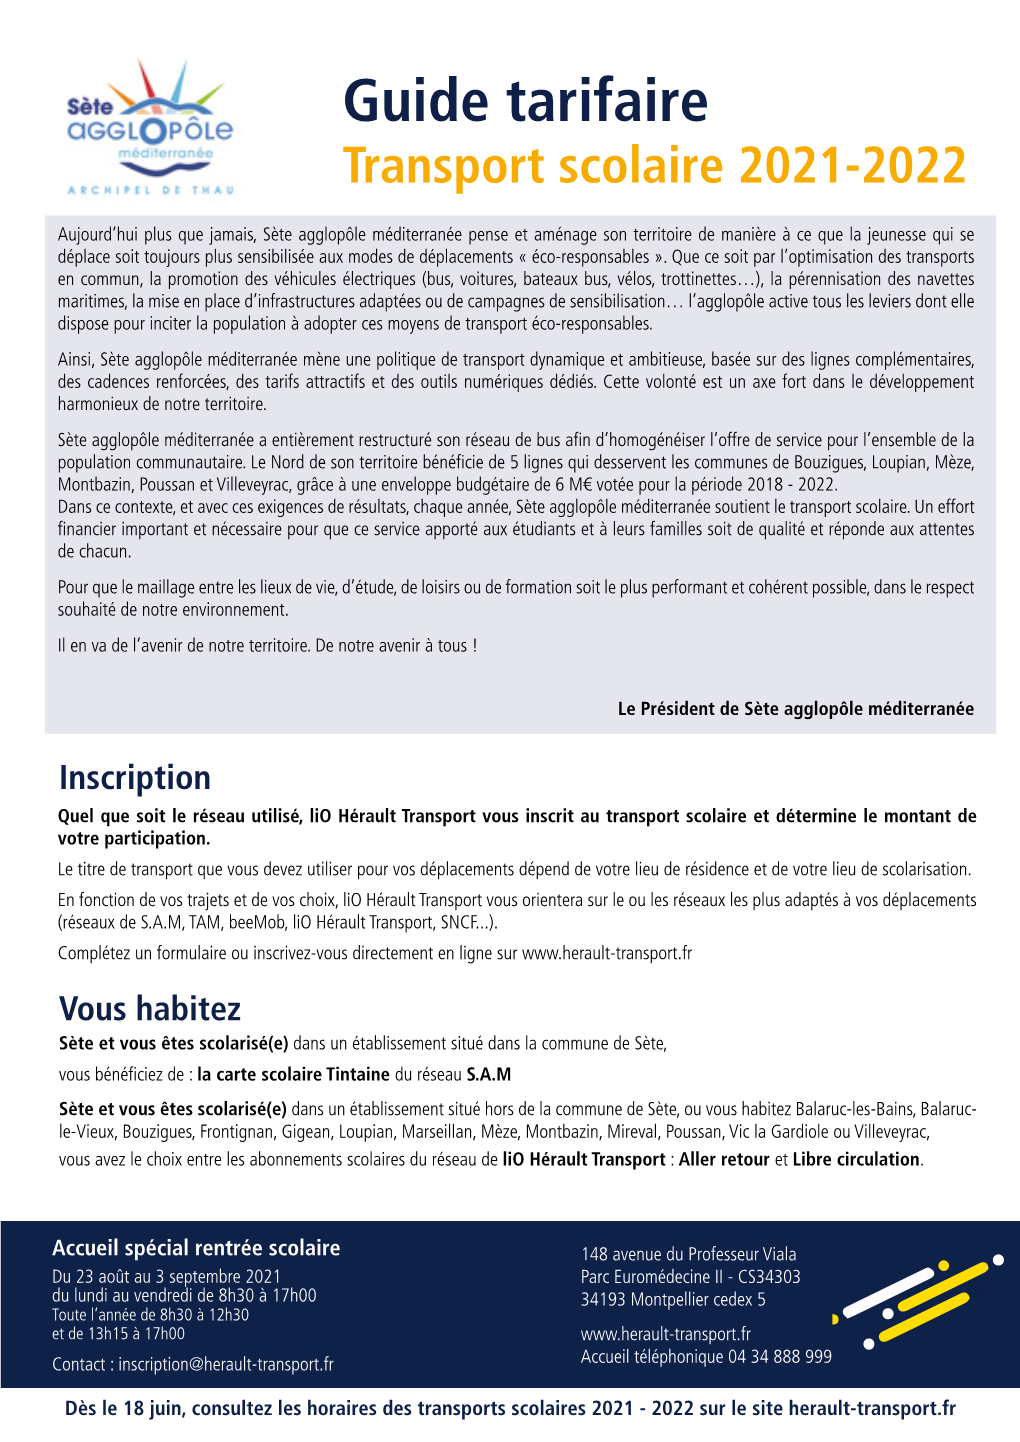 Guide Tarifaire Transport Scolaire 2021-2022